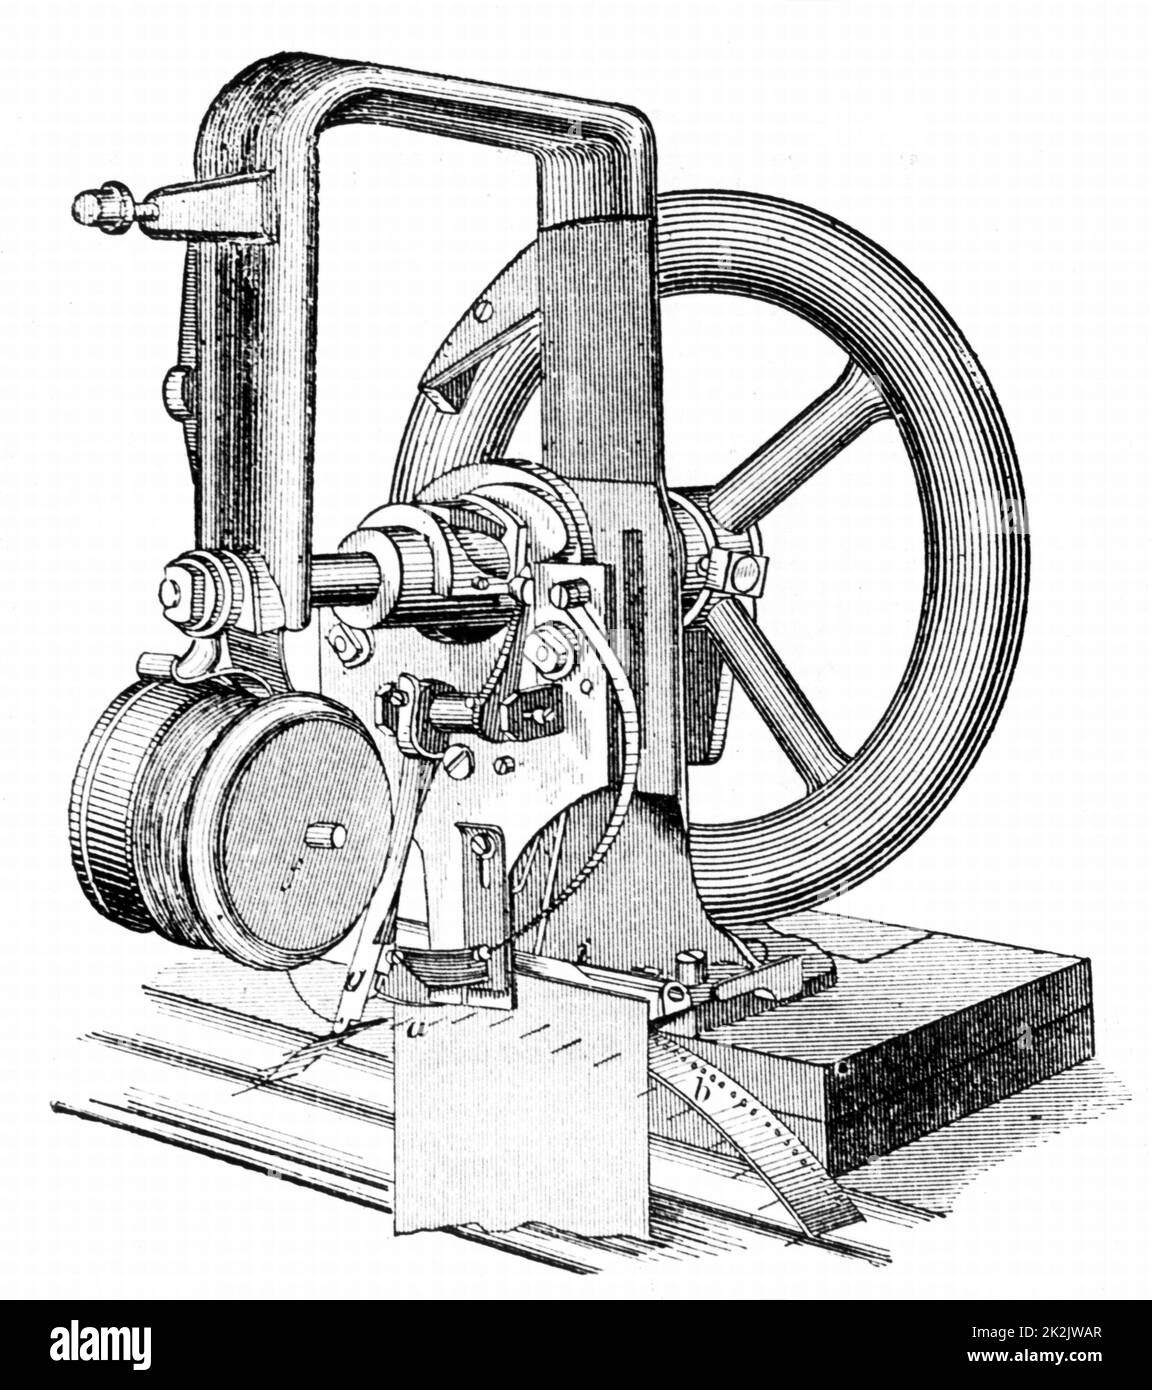 Macchina da cucire Wilson, con trasmissione a cinghia da pedale e barattolo  di olio, dal Park Benjamin Appletons Cyclopedia of Applied Machines,  pubblicata nel 1880